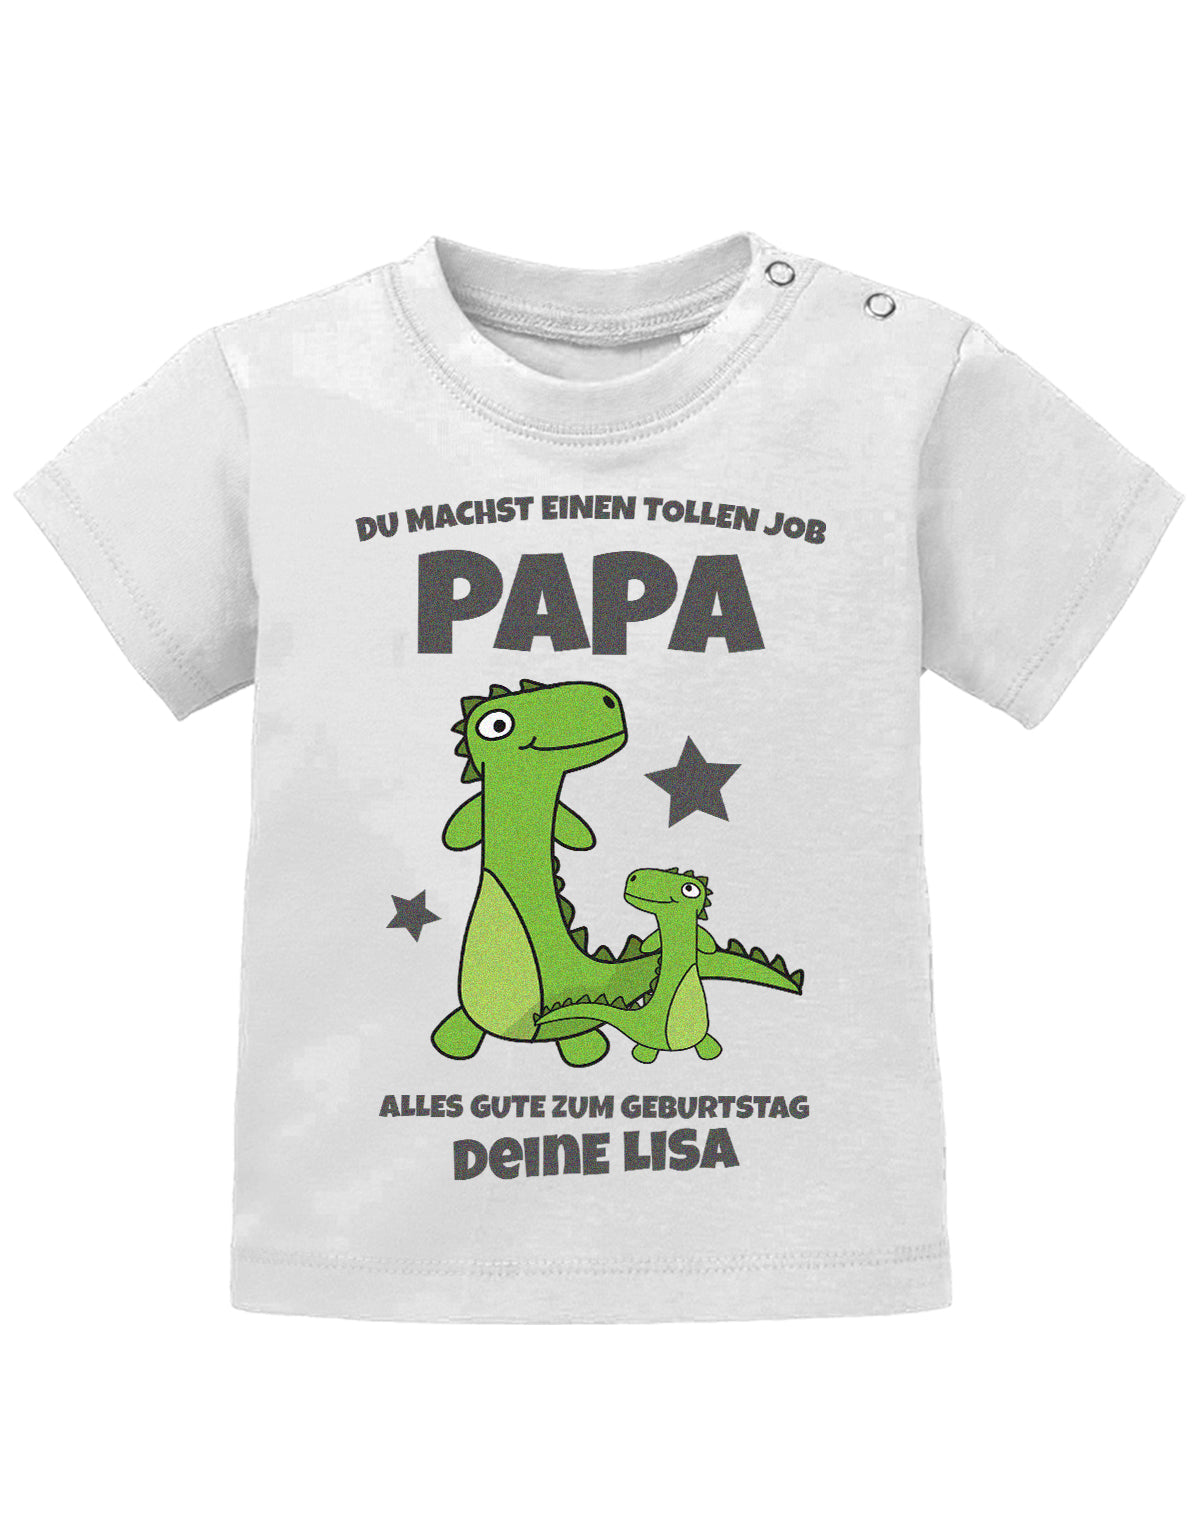 Papa Spruch Baby Shirt. Du machst einen tollen Job, Papa. Alles Gute zum Geburtstag. Personalisiert mit Namen. Weiss